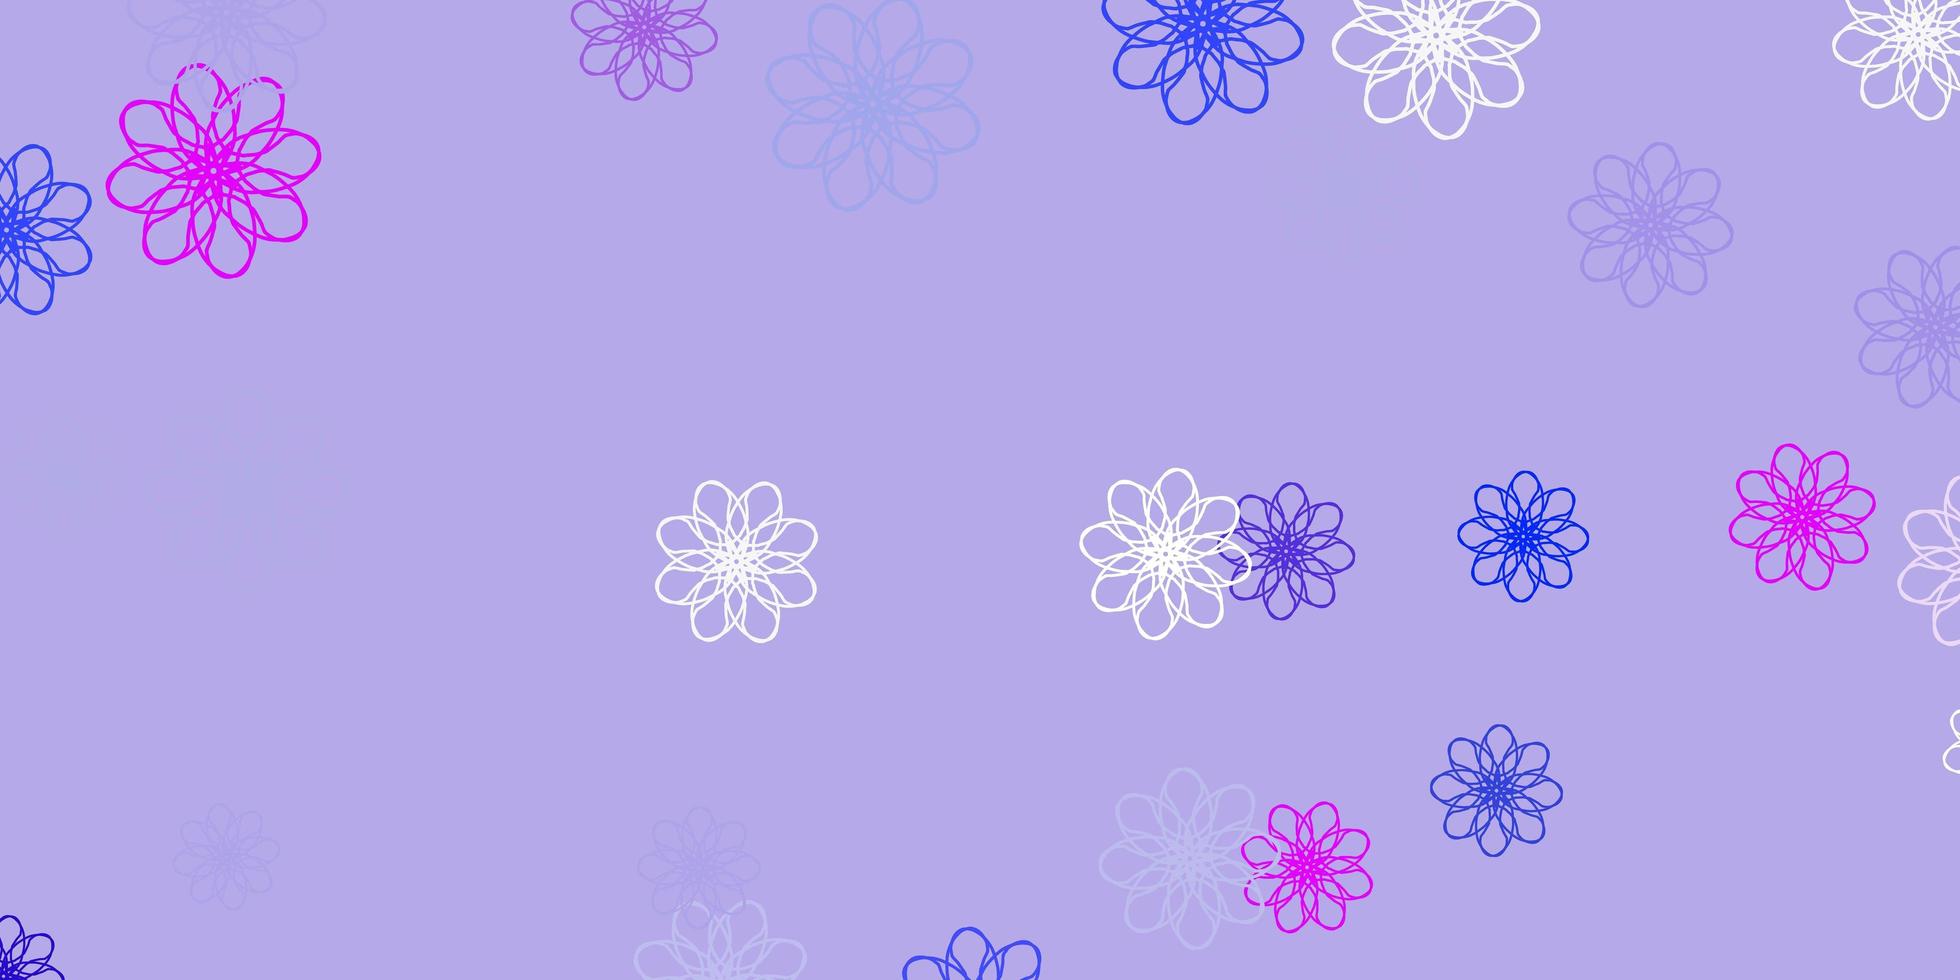 fundo do doodle do vetor rosa claro, azul com flores.